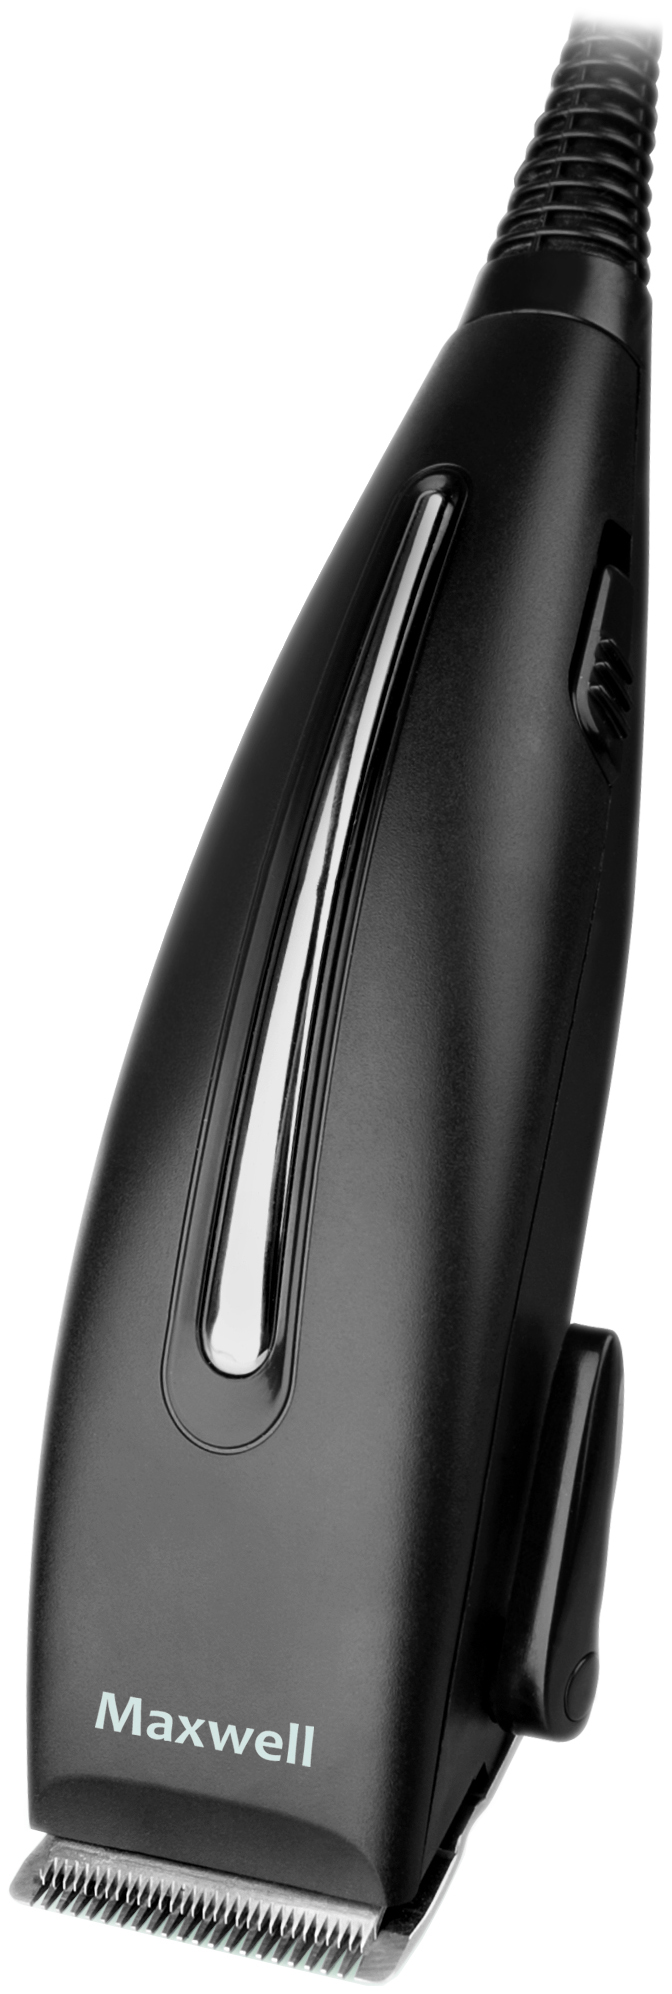 Машинка для стрижки волос Maxwell MW-2112 мода черный коричневый длин